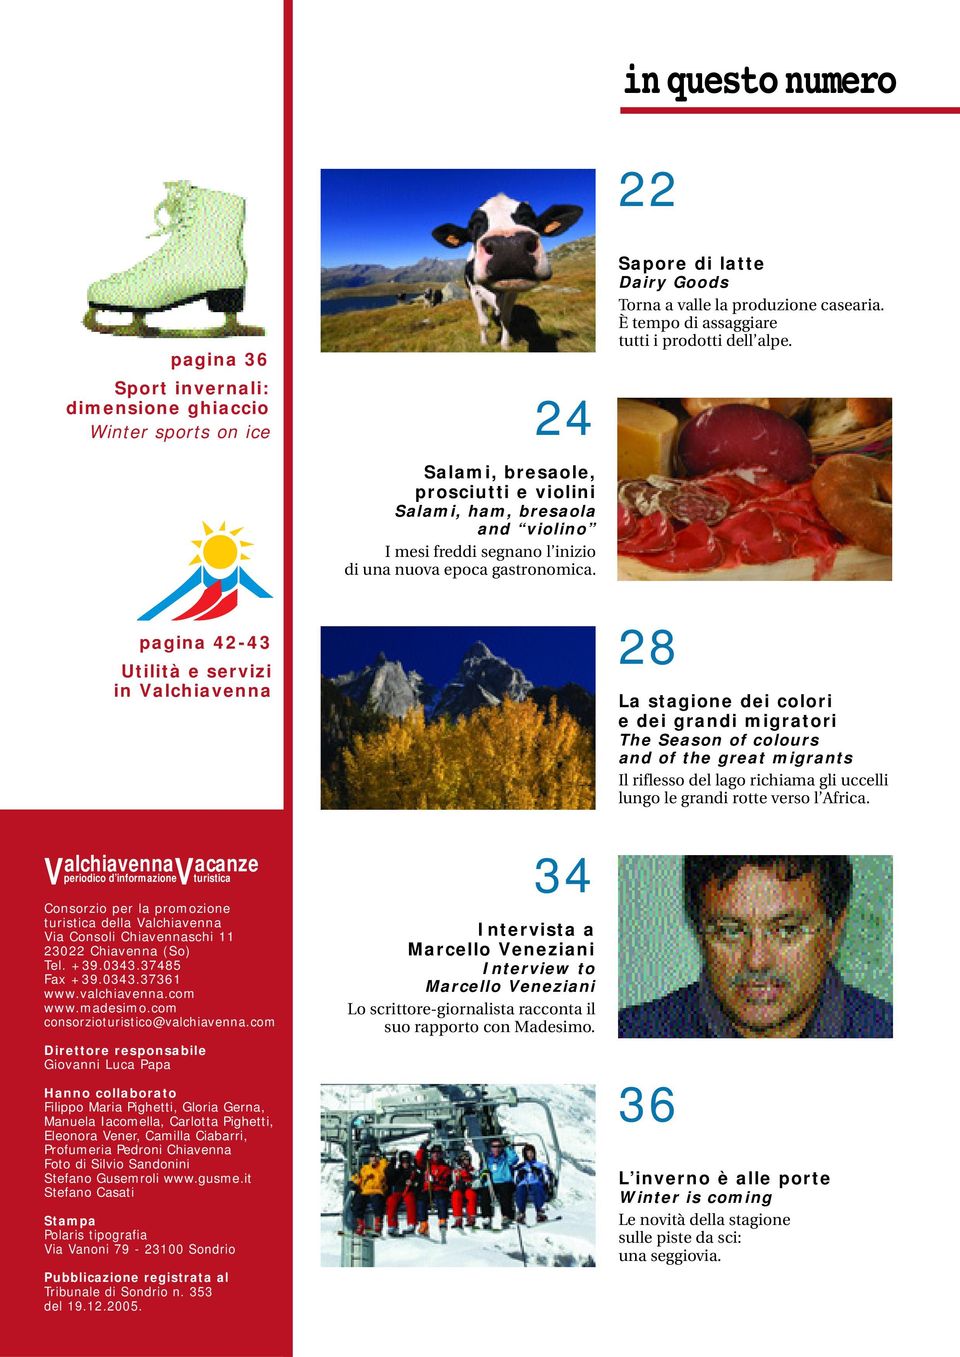 pagina 42-43 Utilità e servizi in Valchiavenna V alchiavenna V acanze periodico d informazione turistica Consorzio per la promozione turistica della Valchiavenna Via Consoli Chiavennaschi 11 23022